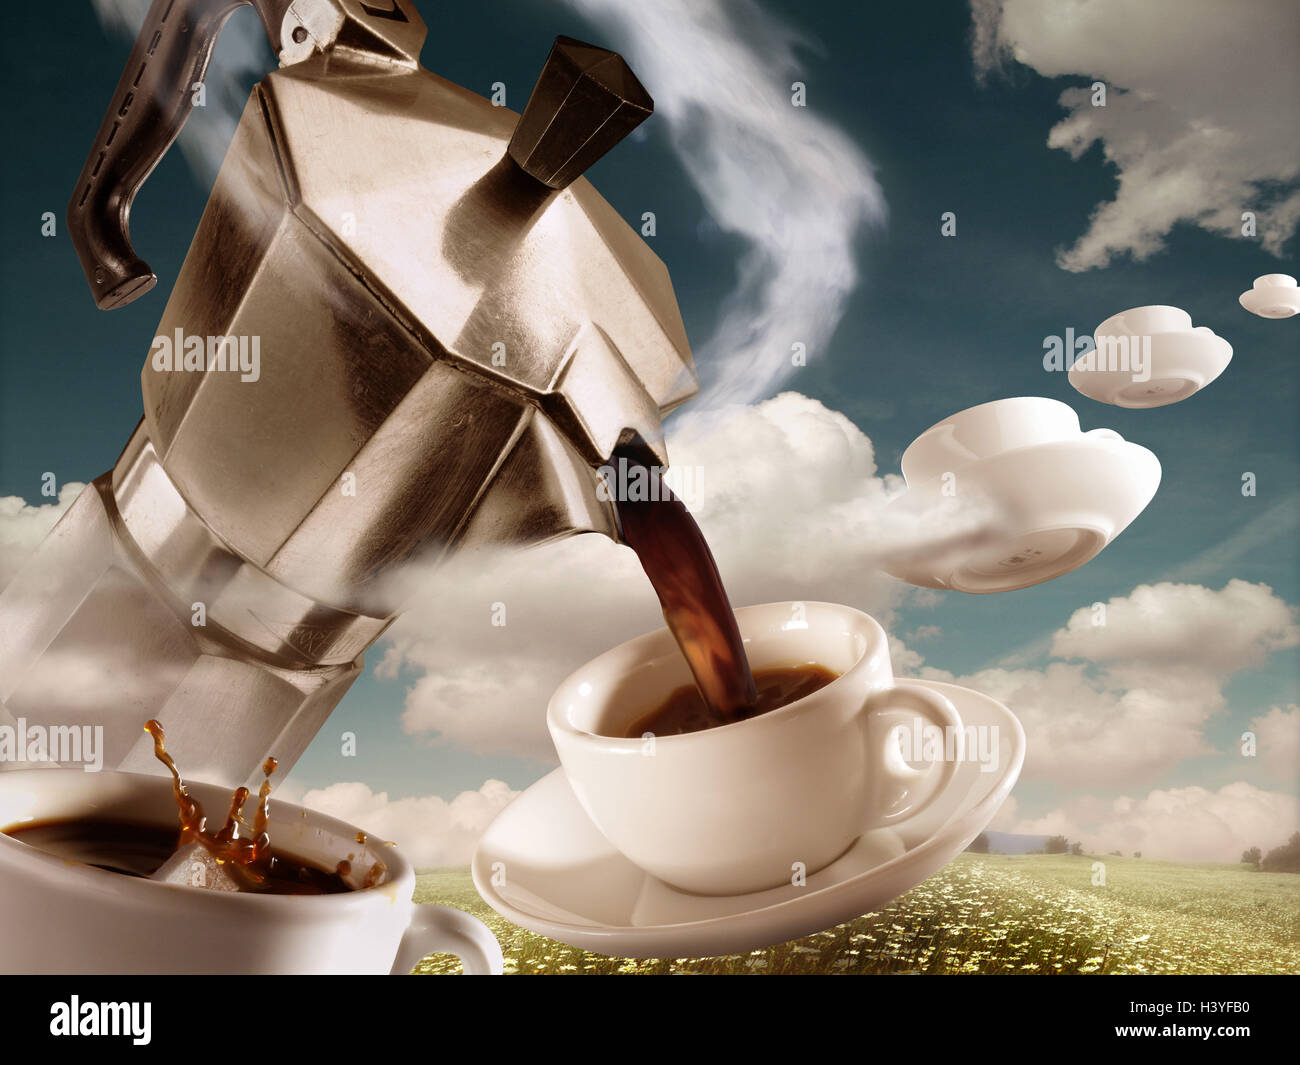 Redactar, máquina espresso, tazas de café, derrame, cielo nublado